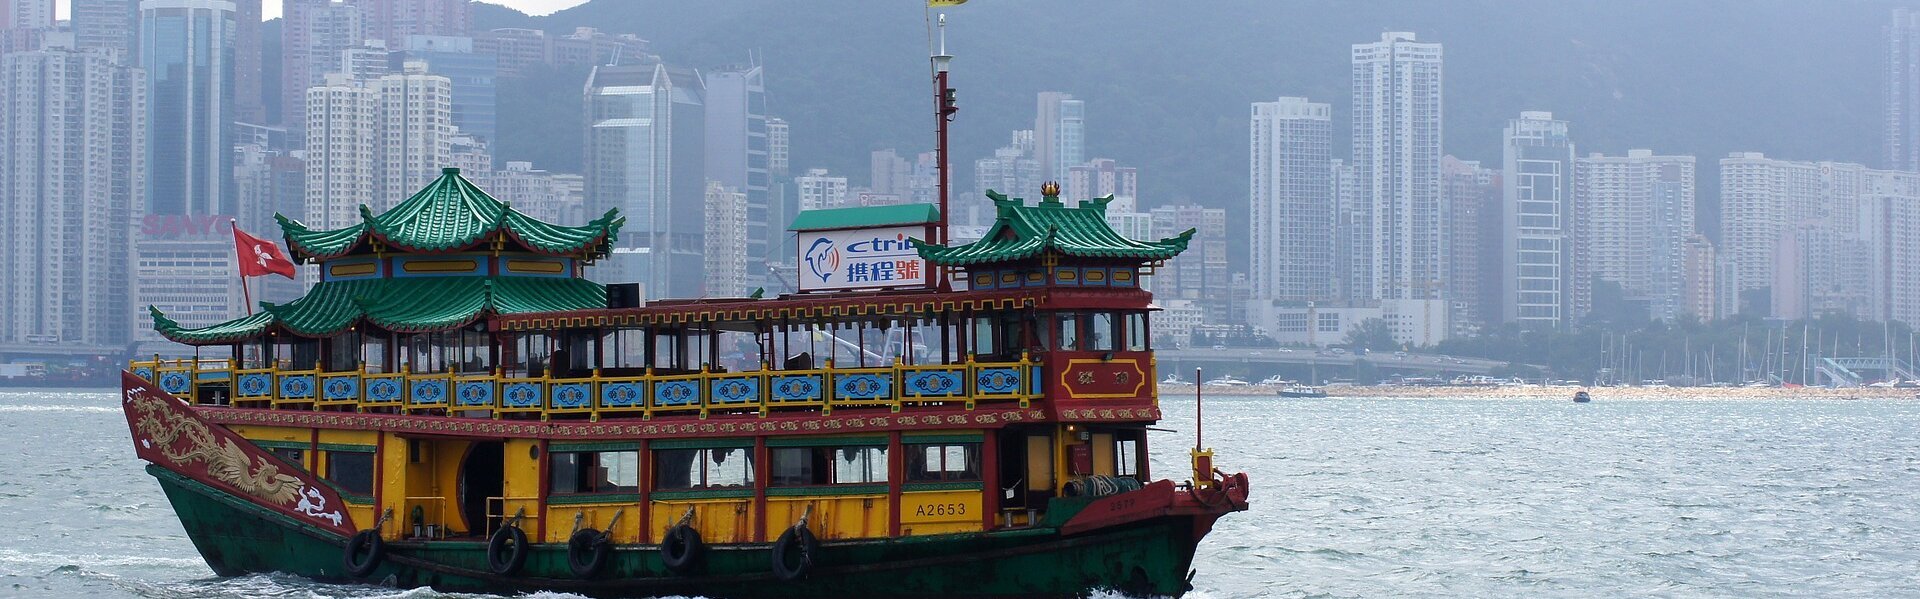 DAs Bild zeigt Hongkong.